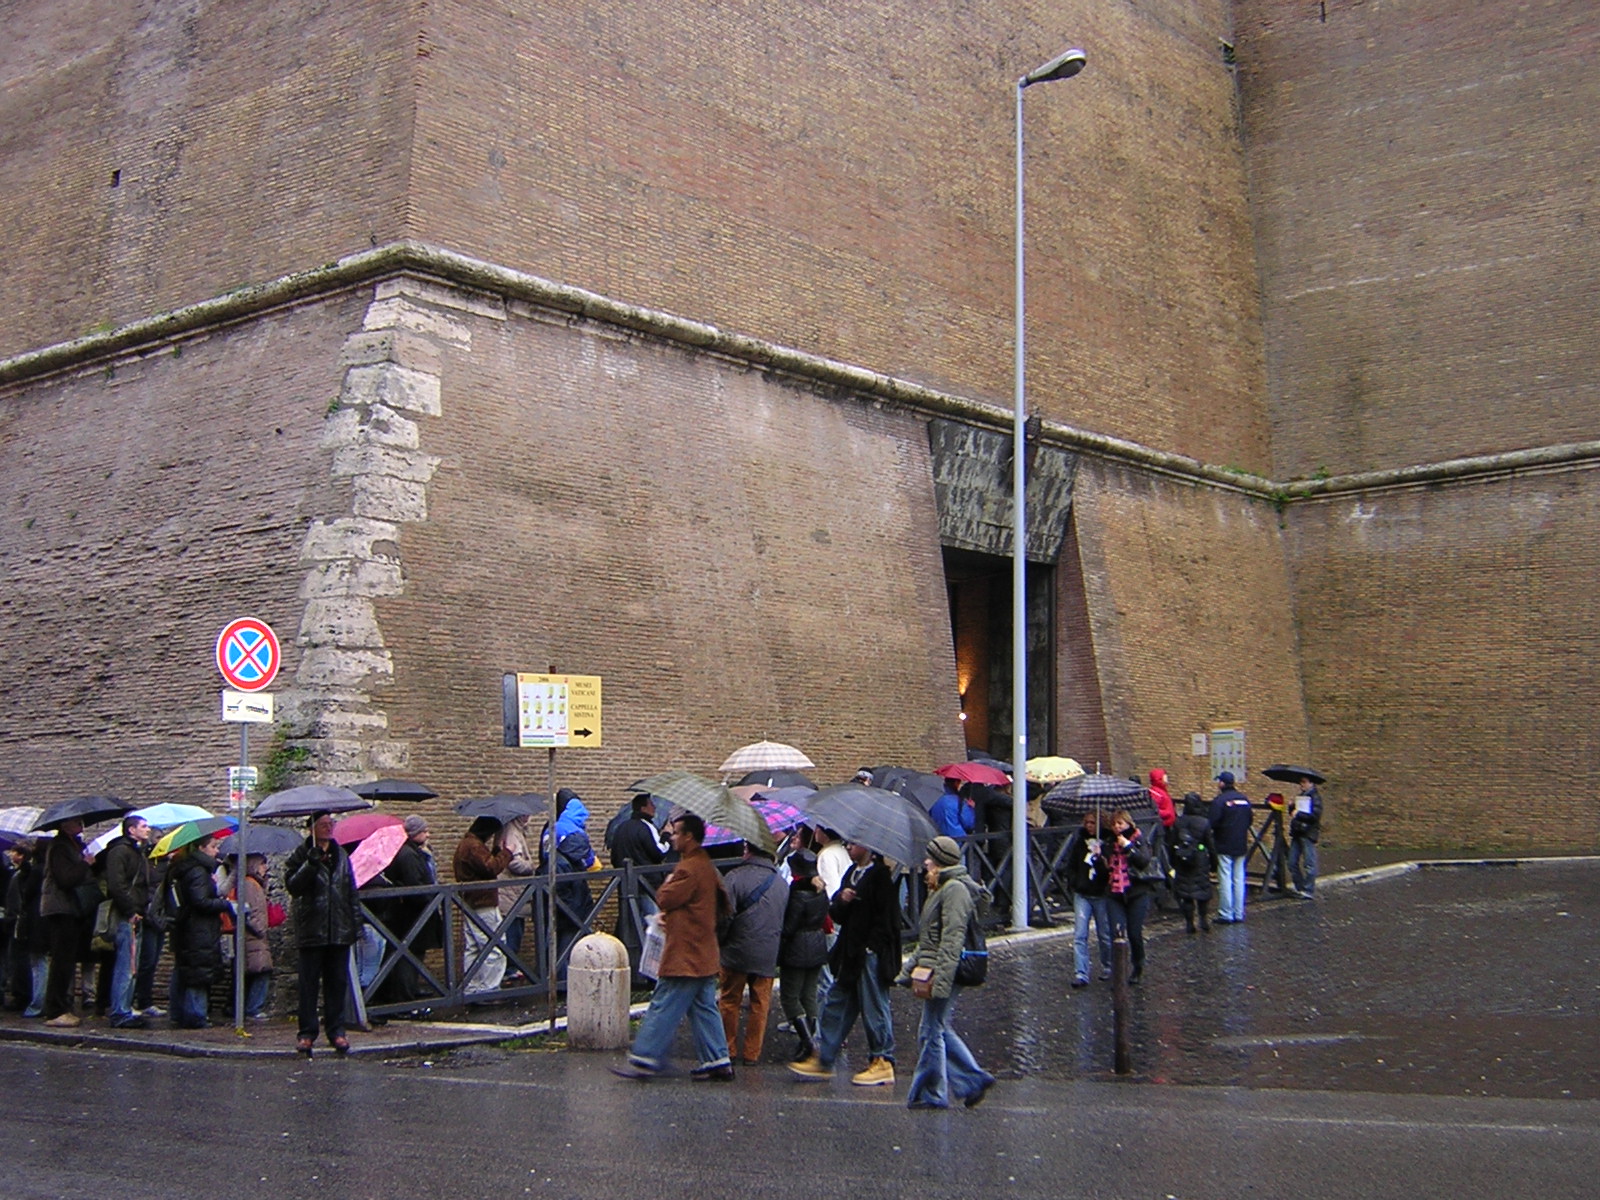 Il pubblico dei Musei Vaticani. Foto © Musei Vaticani